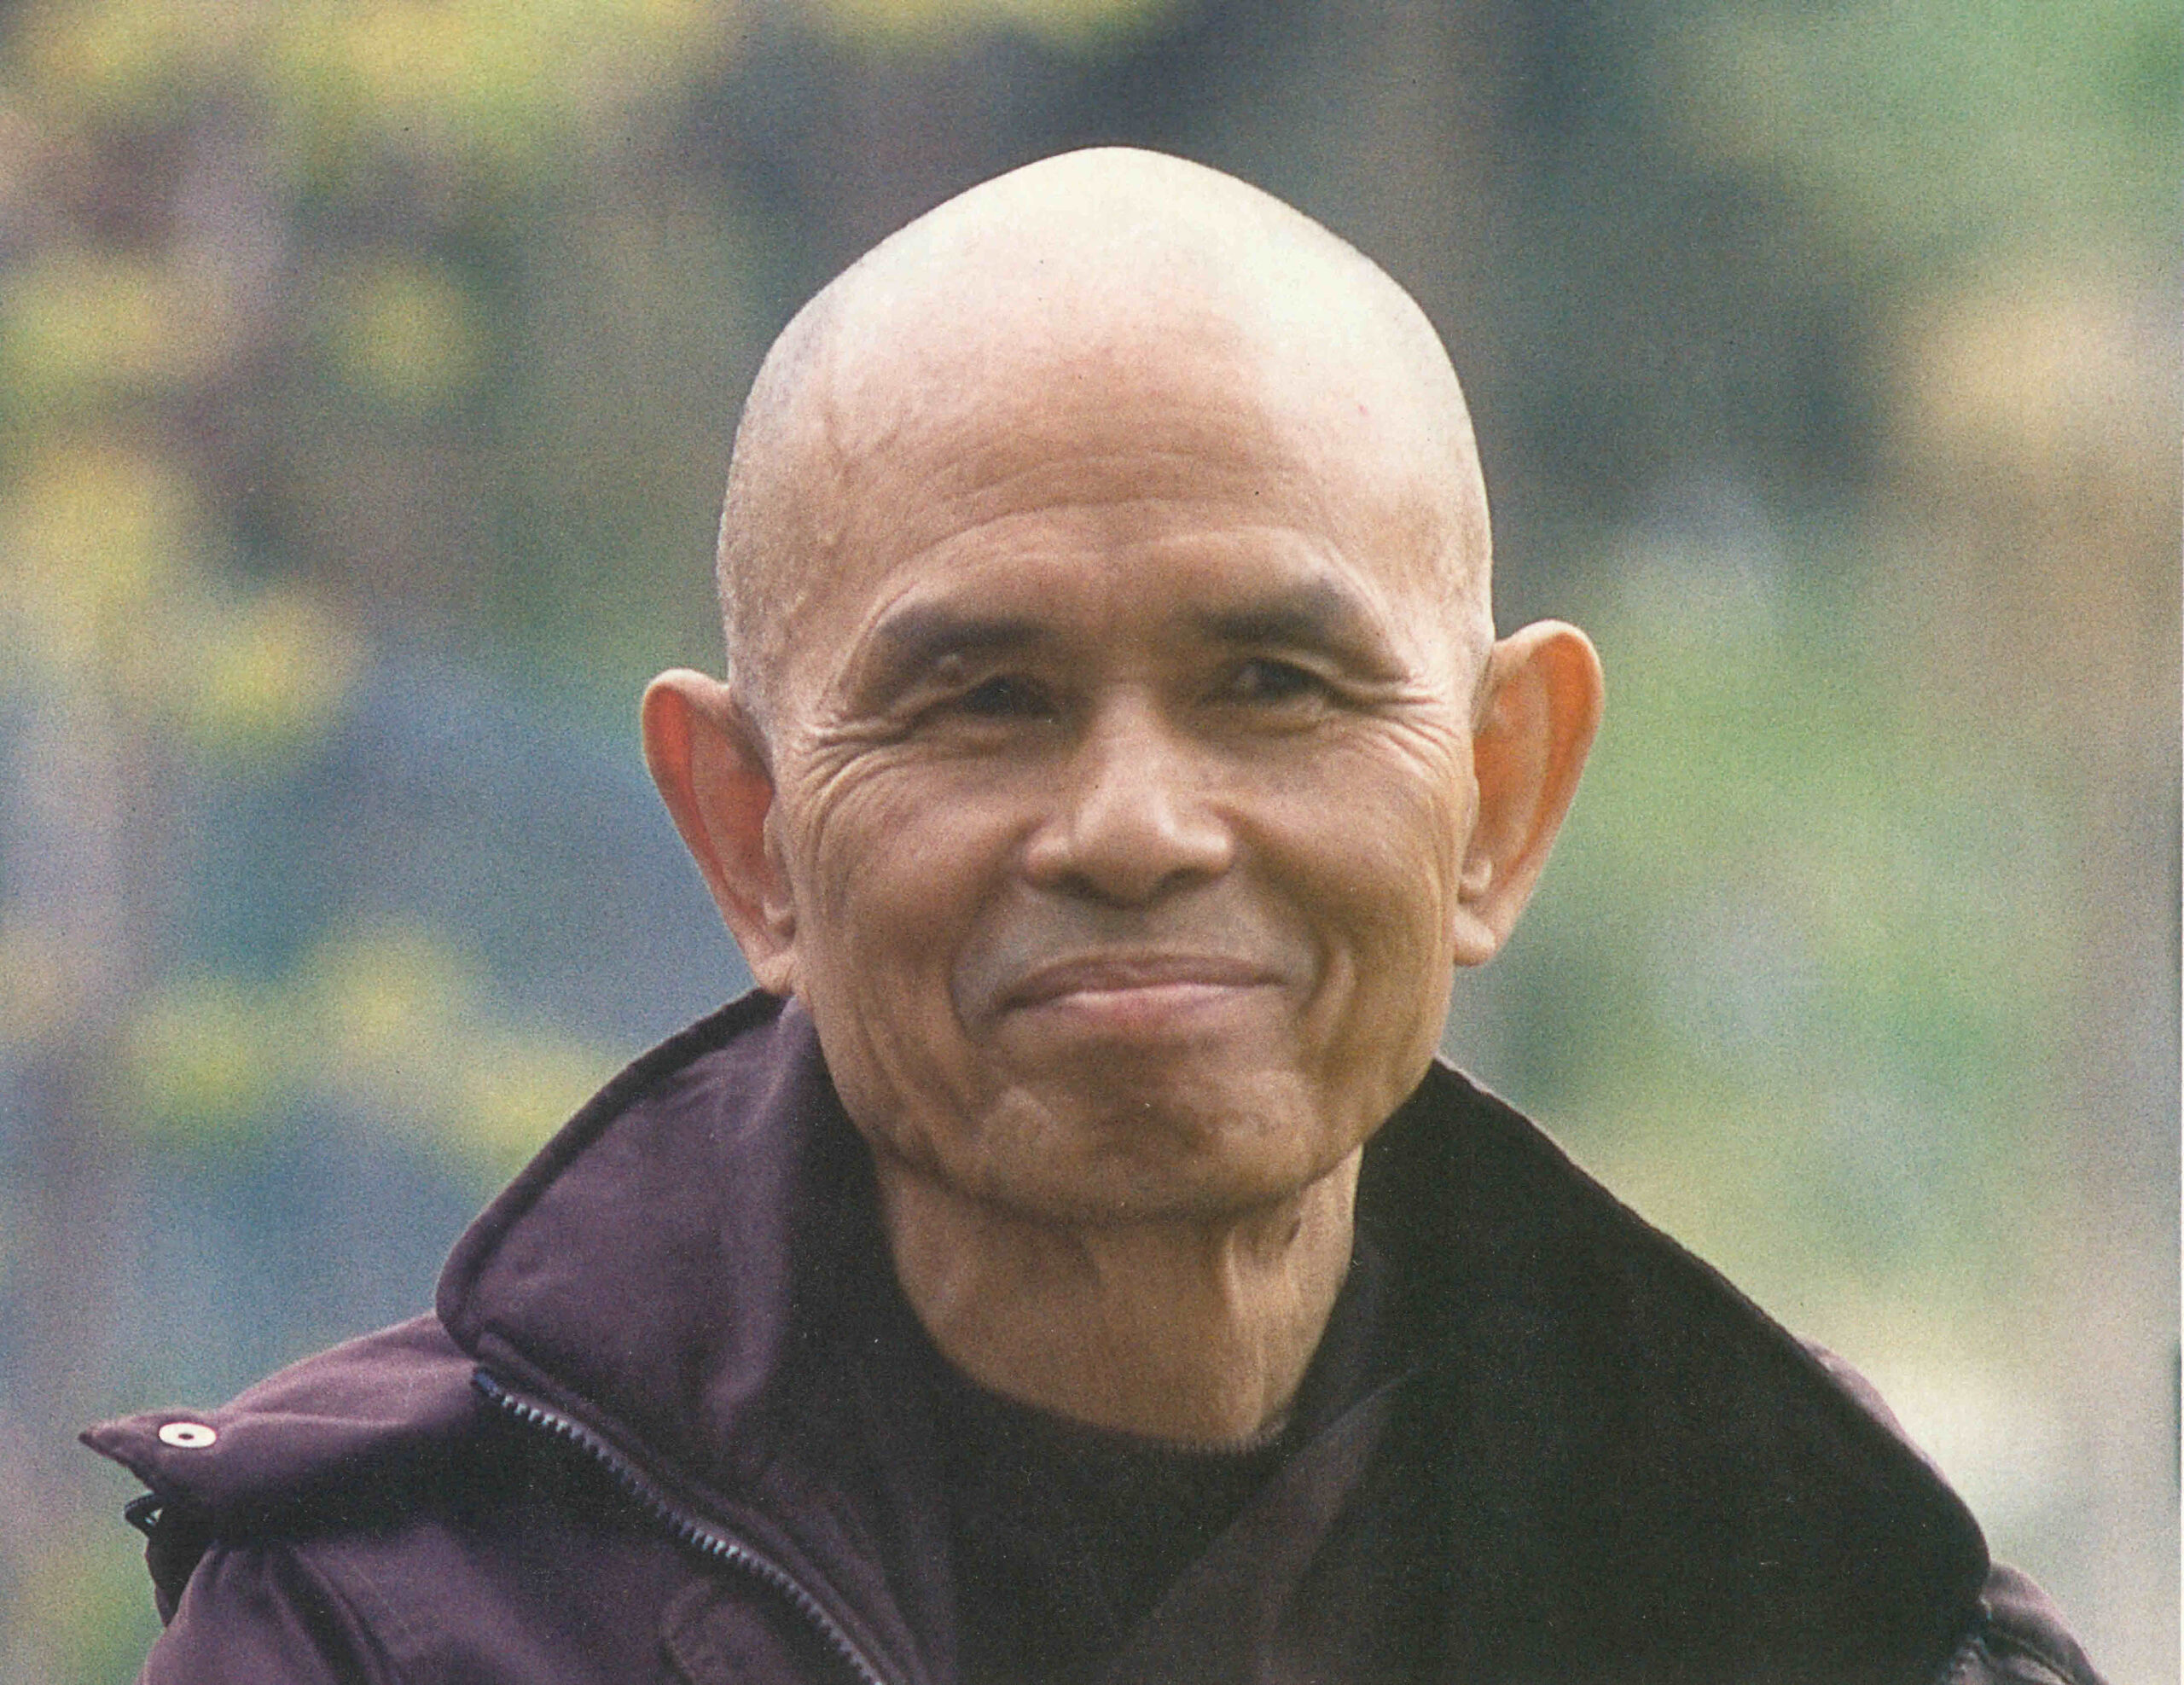 Il miracolo della presenza mentale di Thich Nhat Hanh